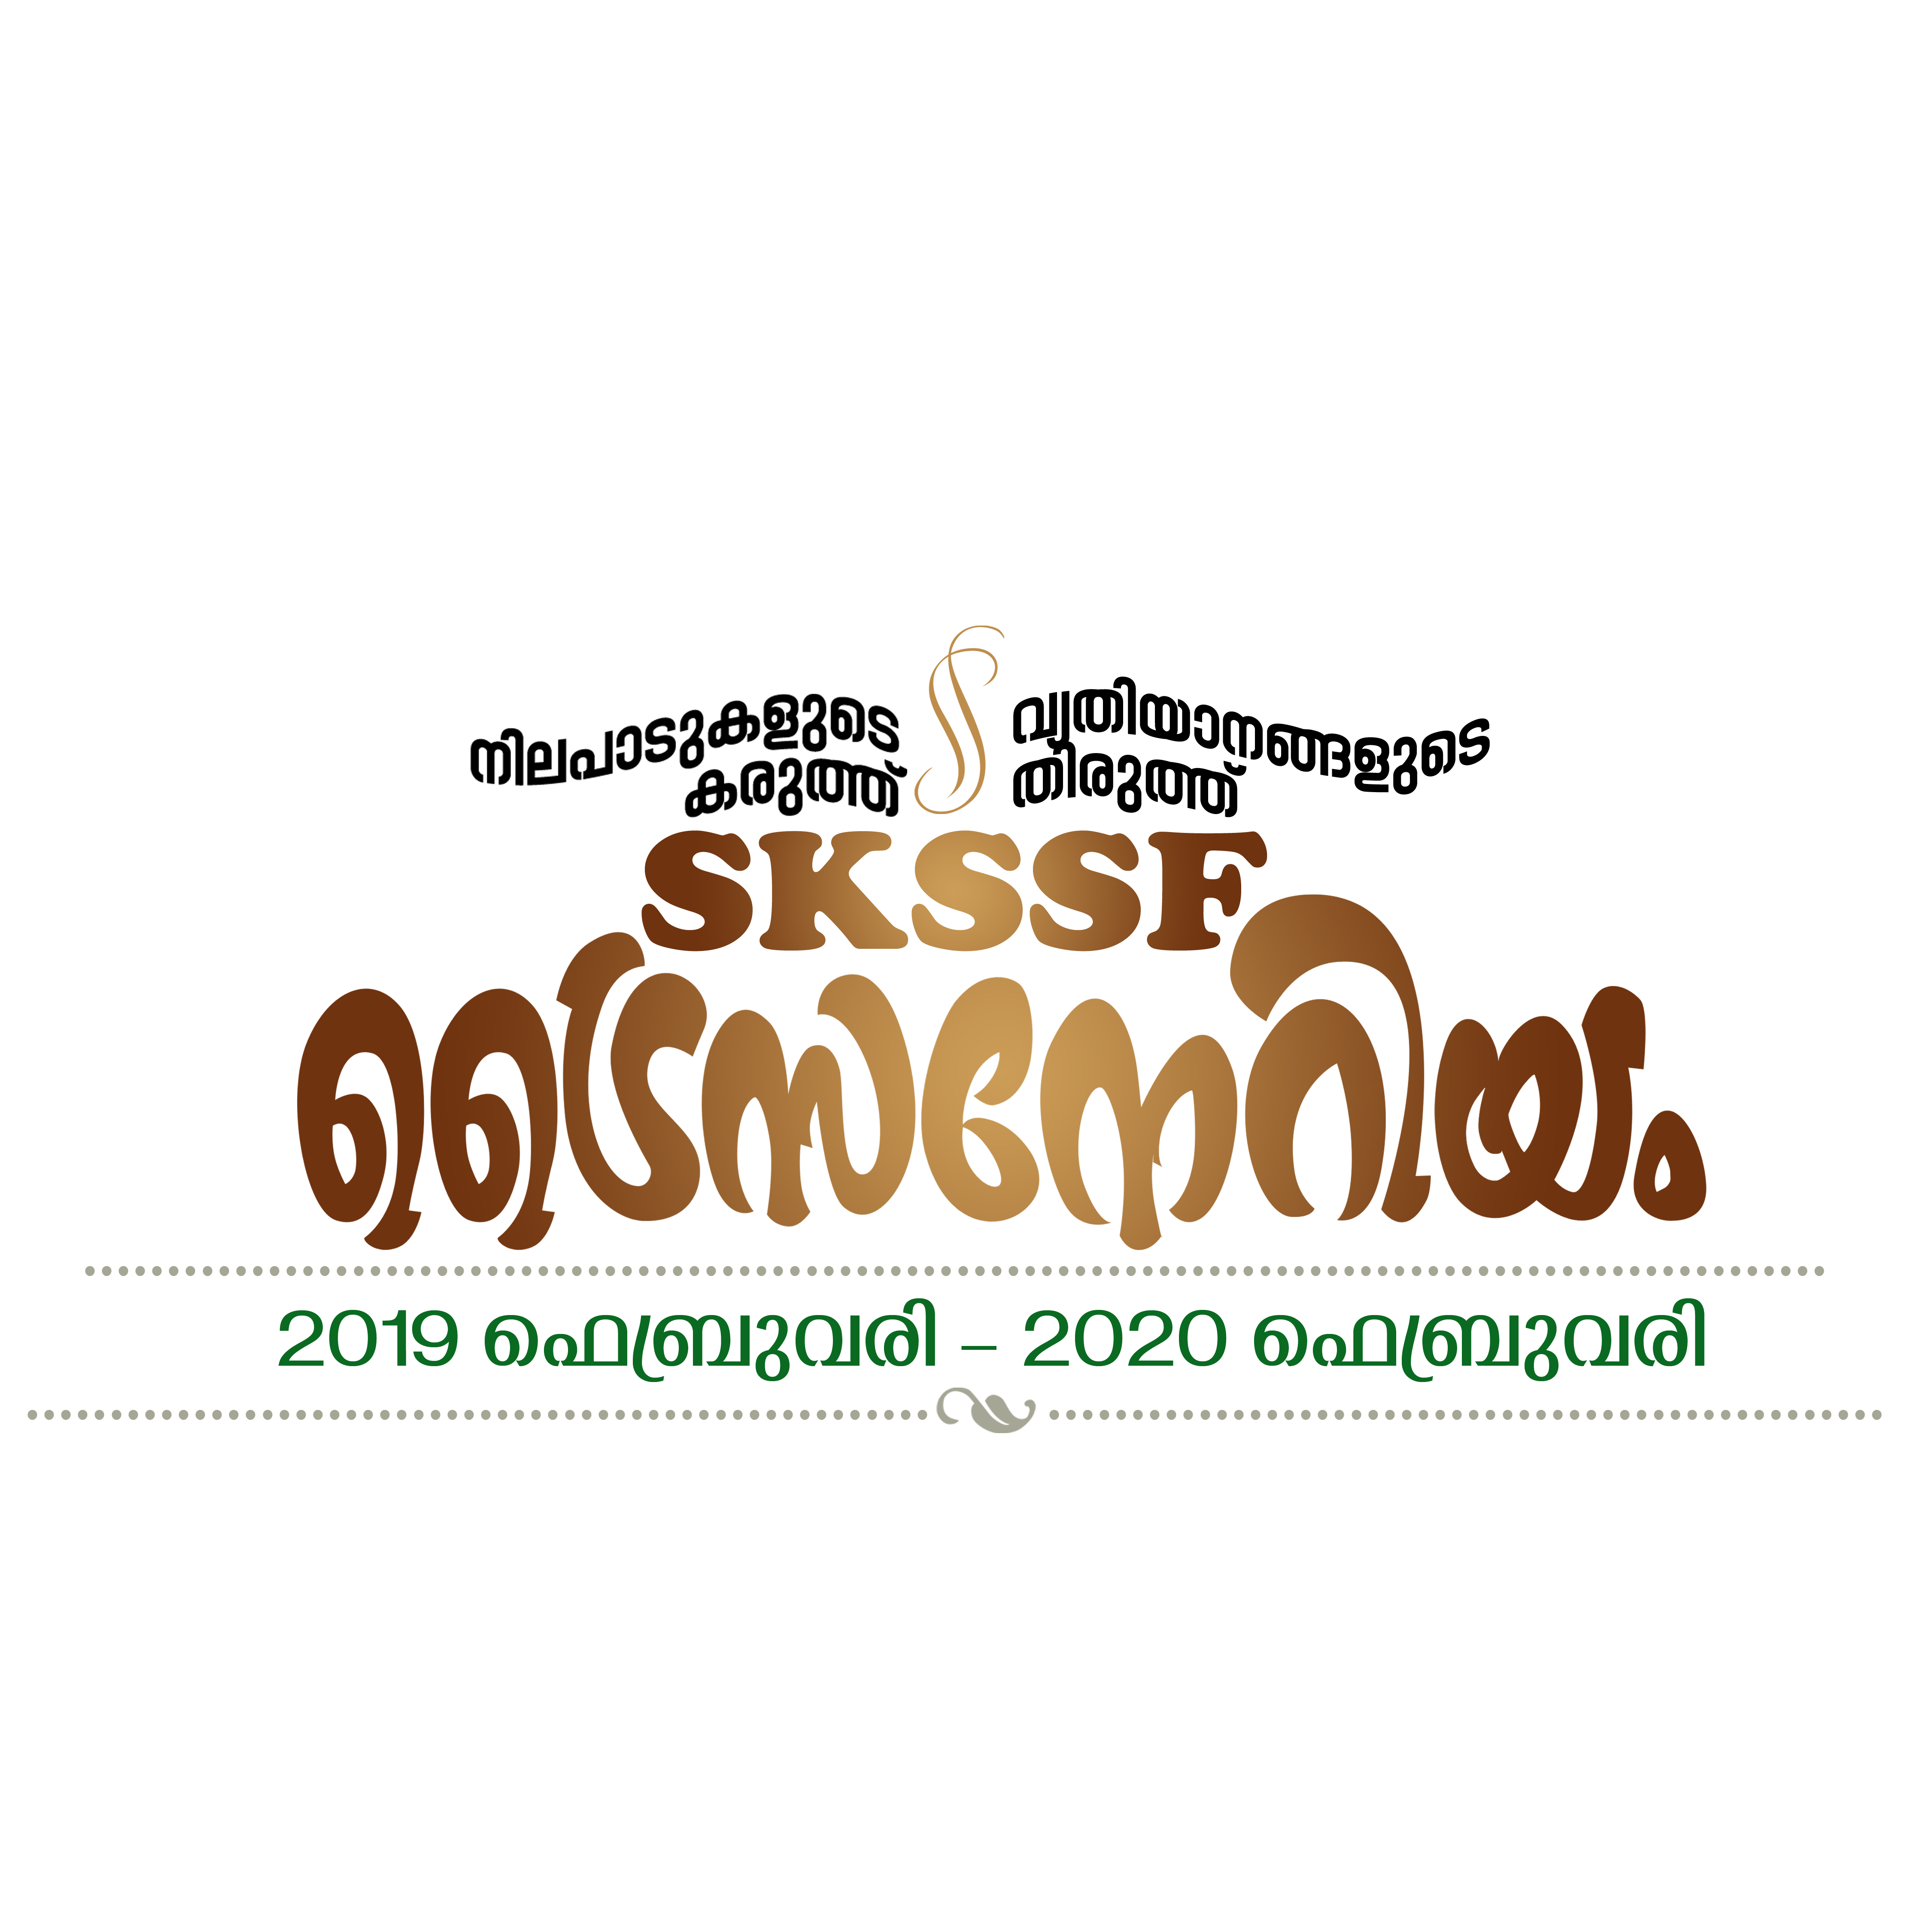 SKSSF News: SKSSF -TREND സമ്മര്‍ഗൈഡ് ഉദ്ഘാടനം ഇന്ന് കൊടുവള്ളിയിൽ